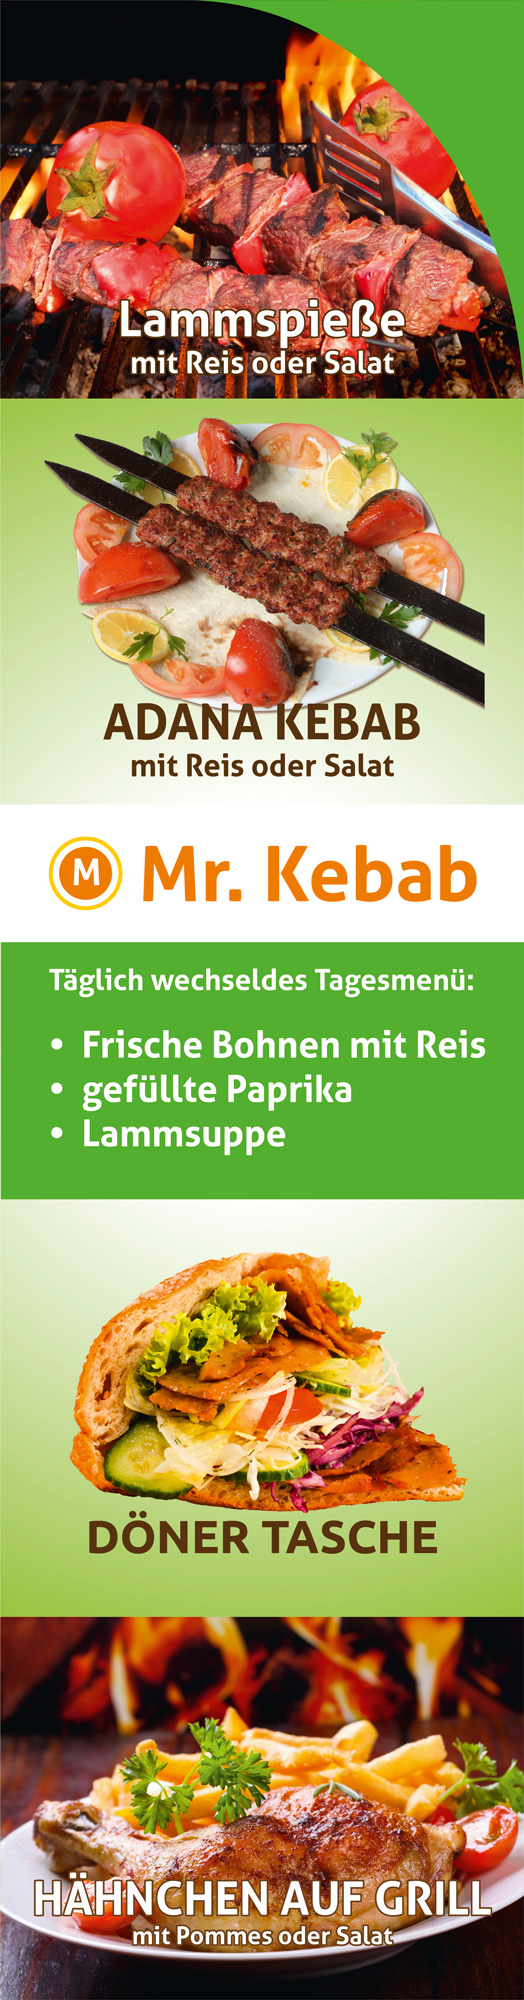 Mr. Kebab Döner Laden Leuchtreklame